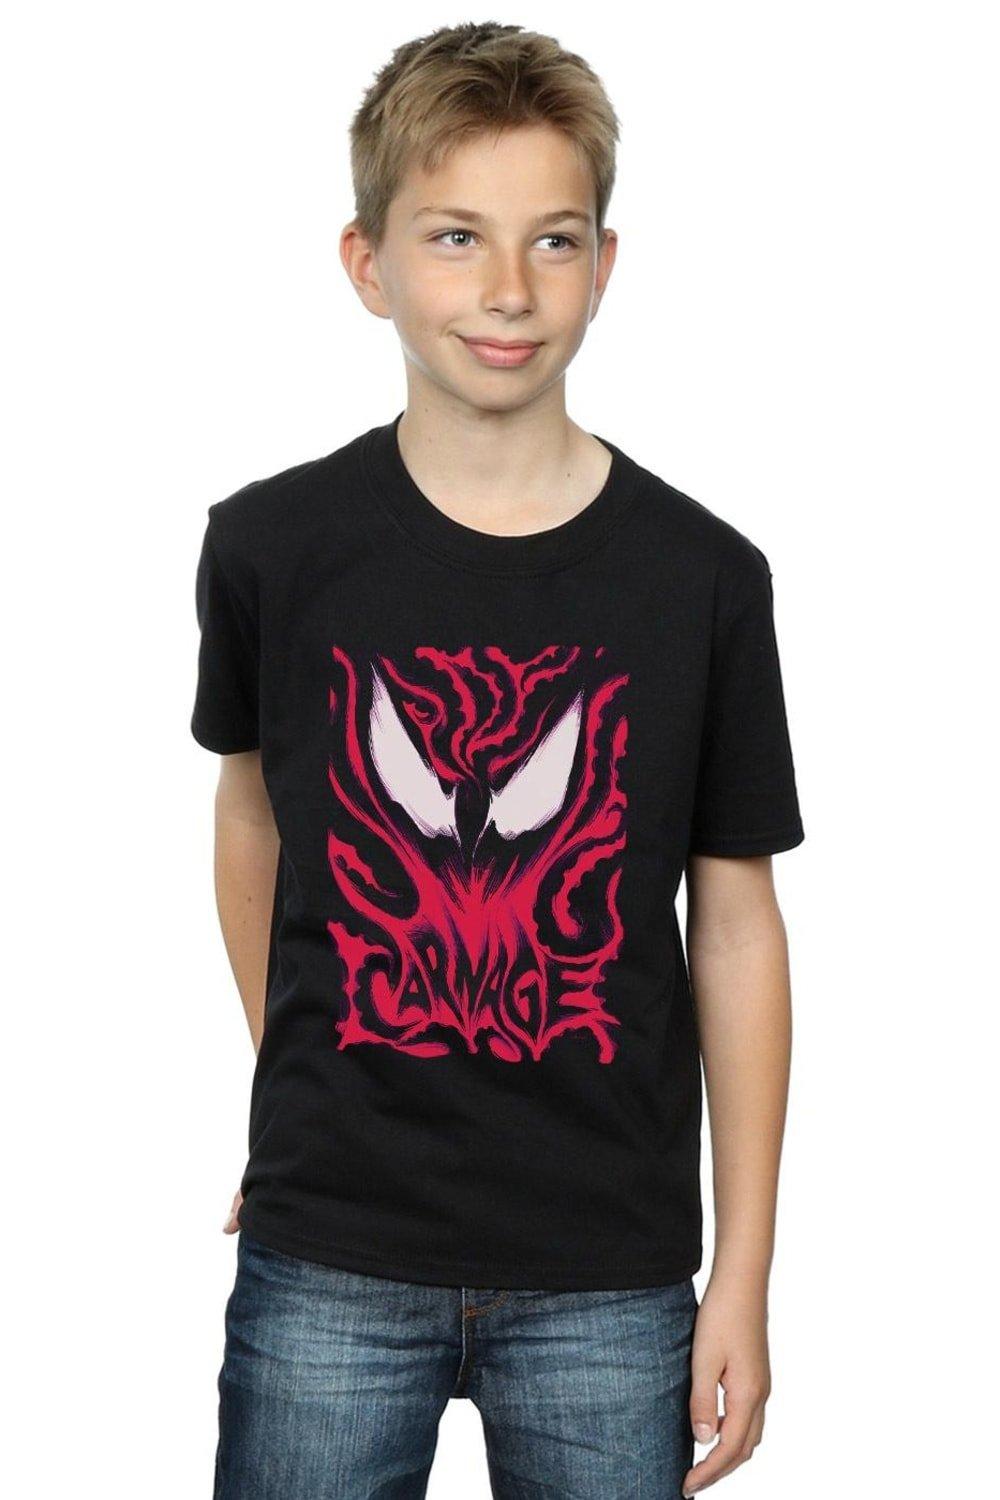 Venom Carnage T-Shirt